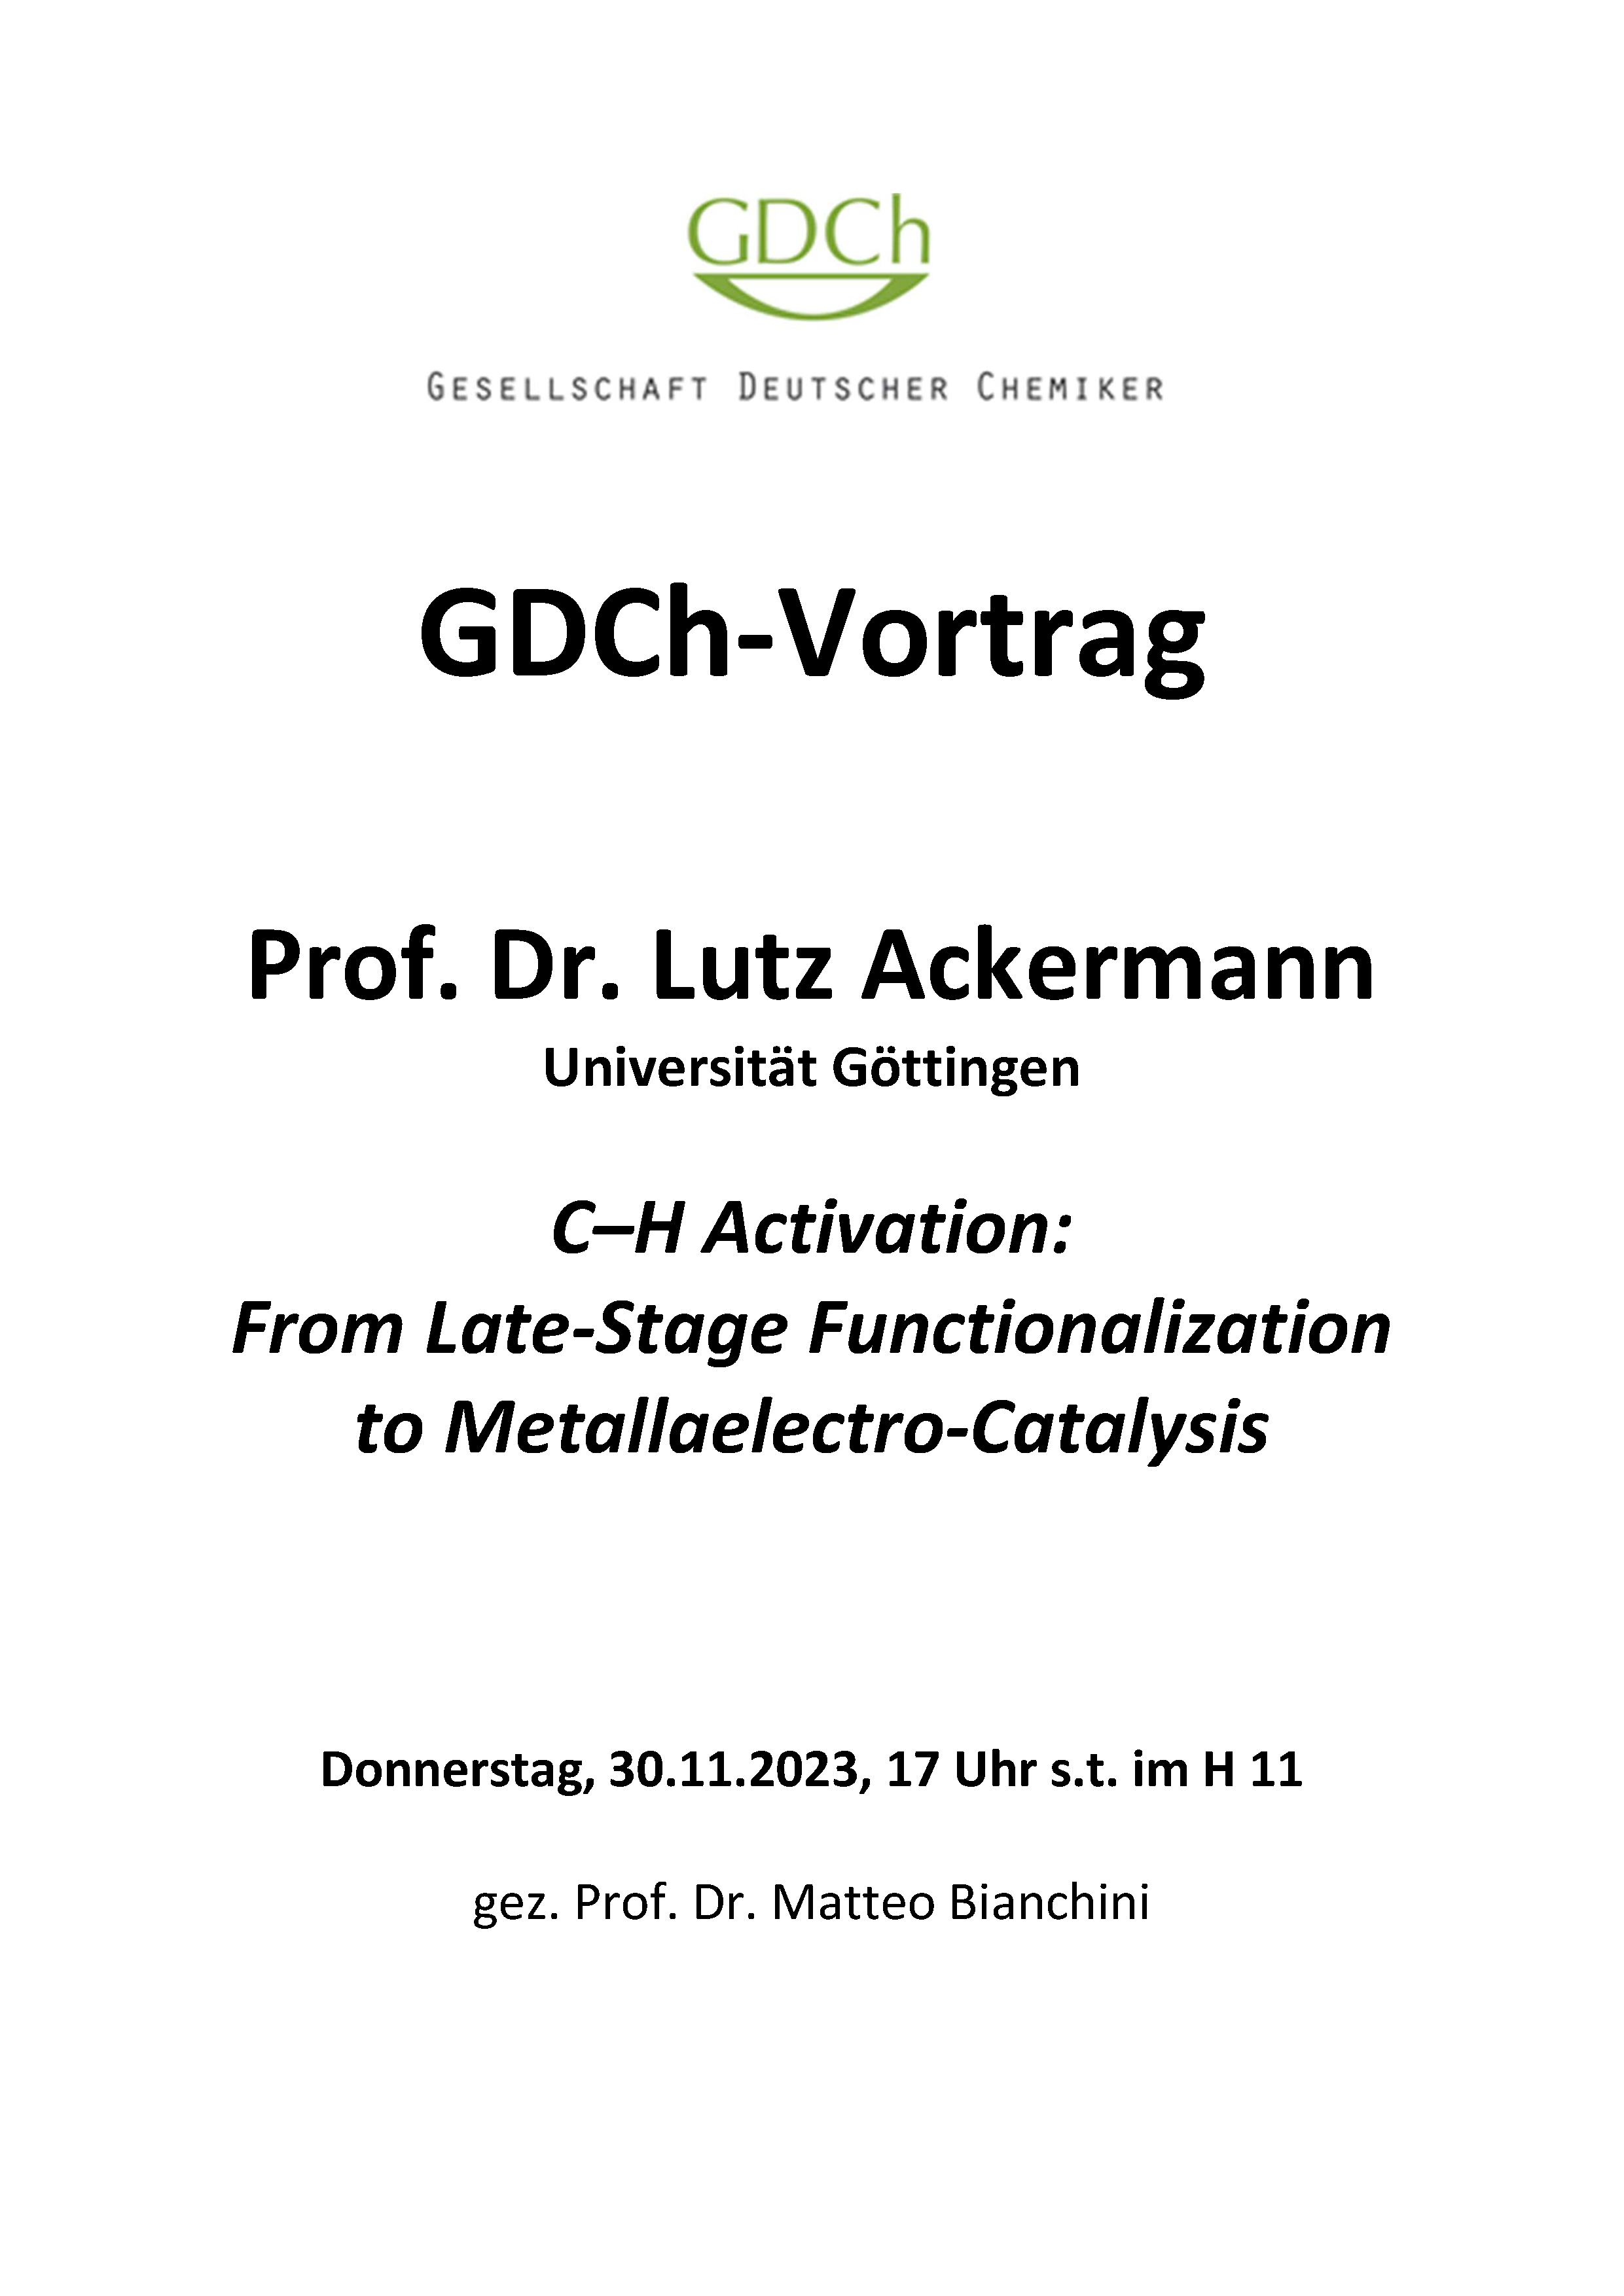 GDCh Prof. Lutz Ackermann